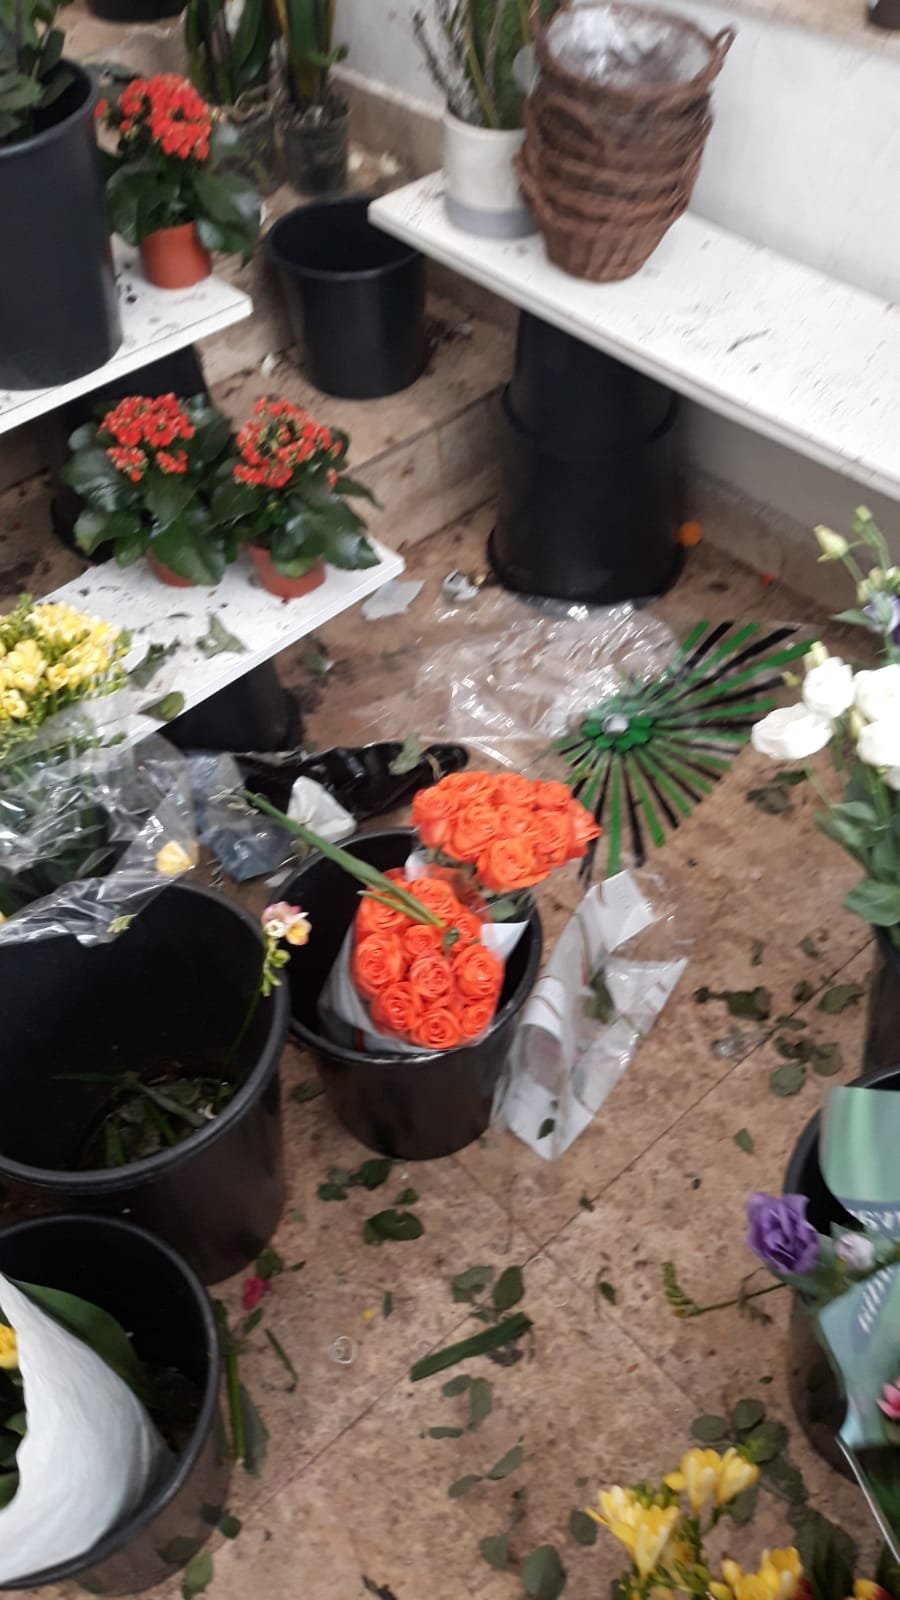 Florărie din Cluj, închisă și amendată din cauza mizeriei